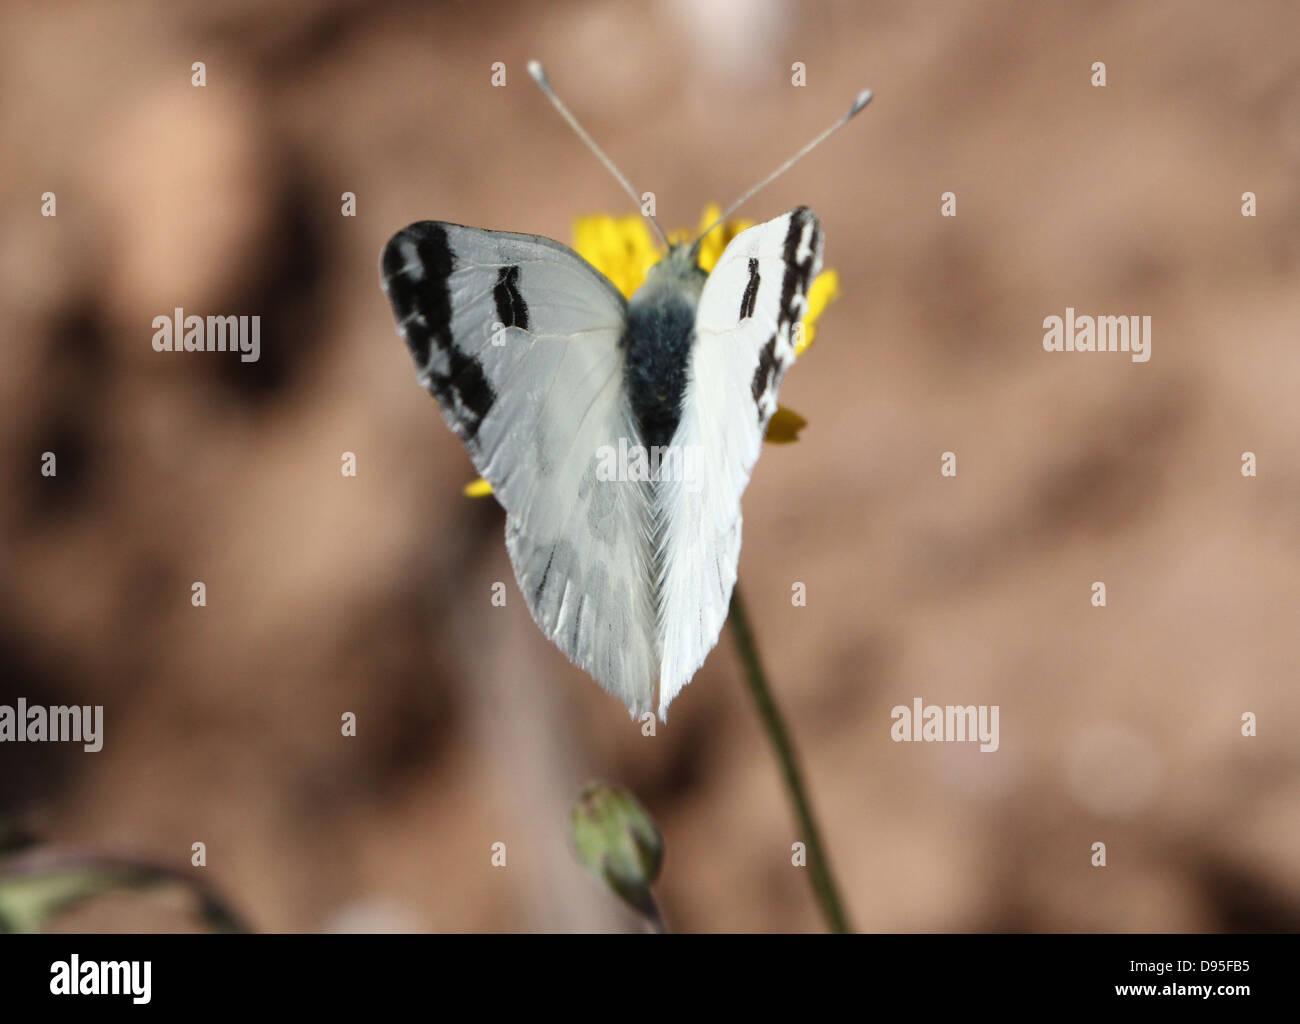 Dettagliato close-up imago macro di una vasca da bagno farfalla bianca (Pontia daplidice) in posa su di un fiore giallo Foto Stock